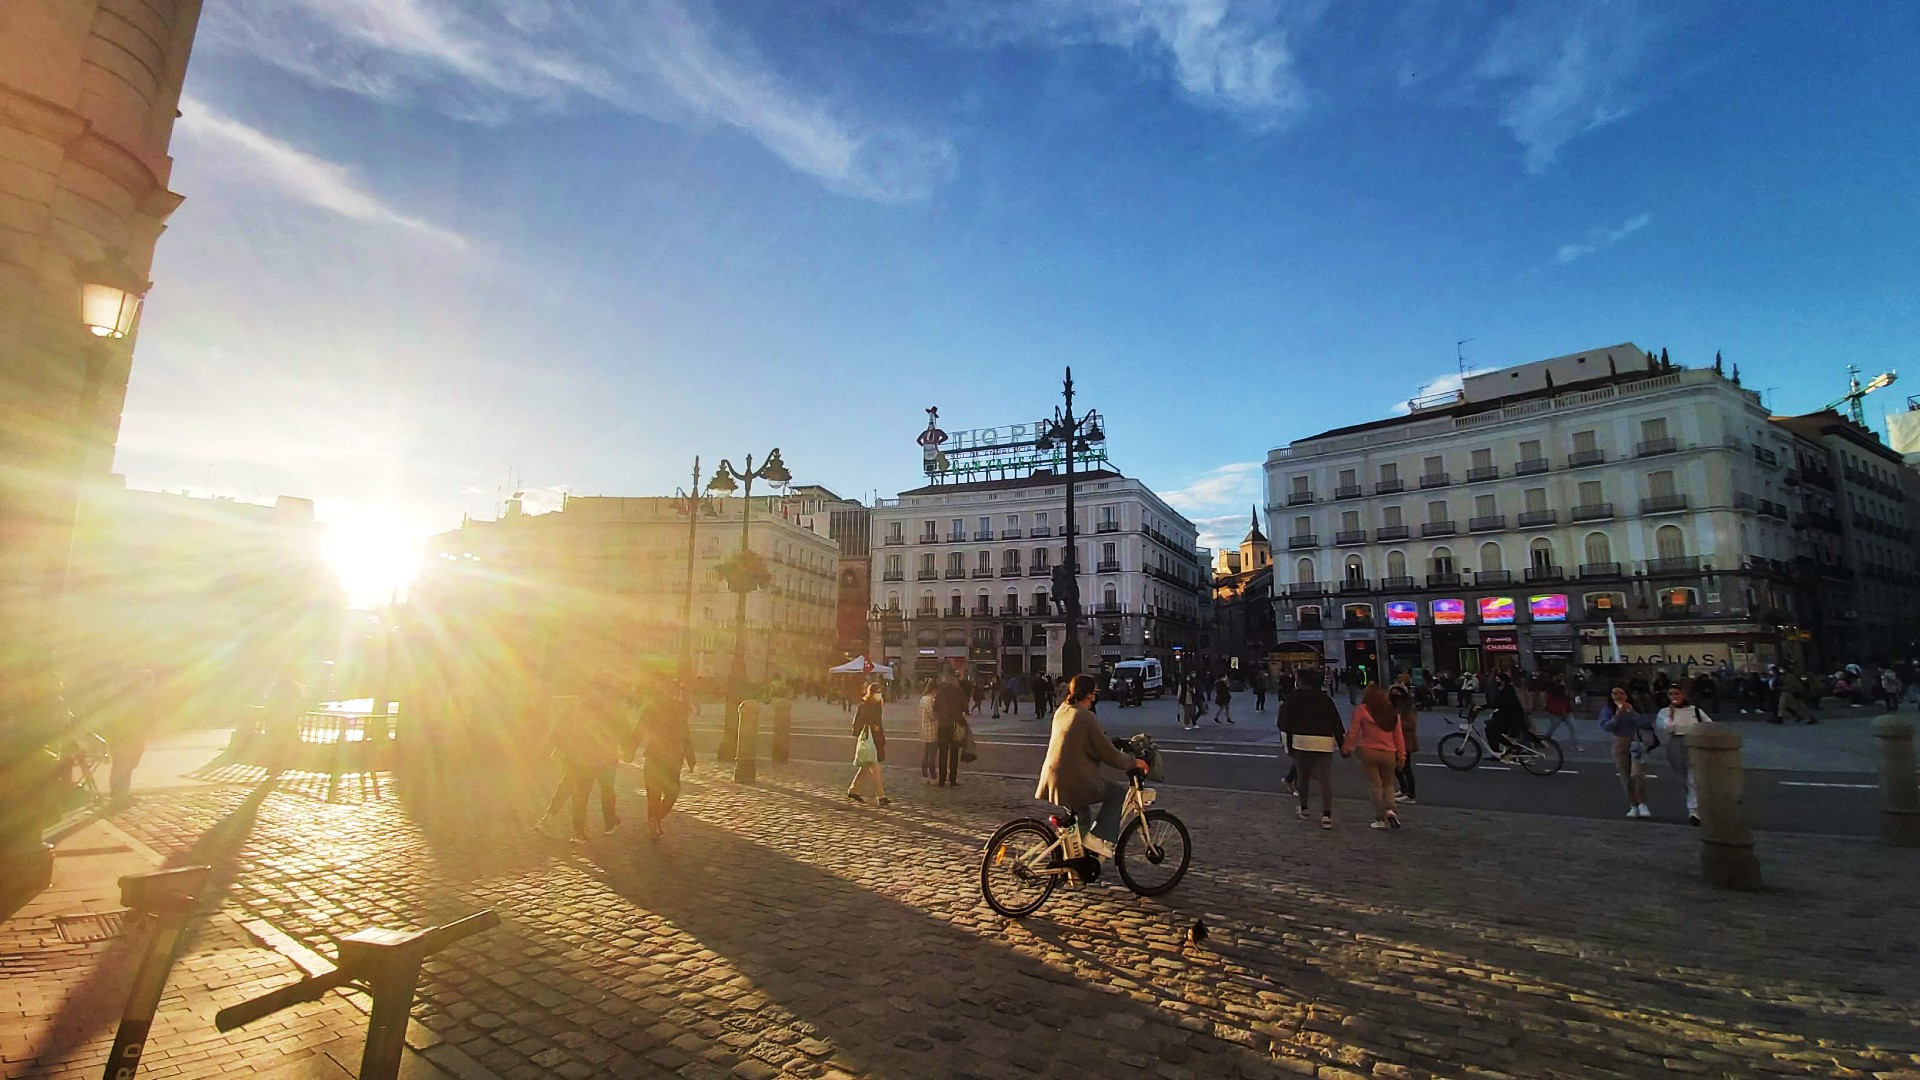 El barri més petit al centre de Madrid, Sol és l'epicentre polític, històric, comercial i de transports de la capital espanyola.